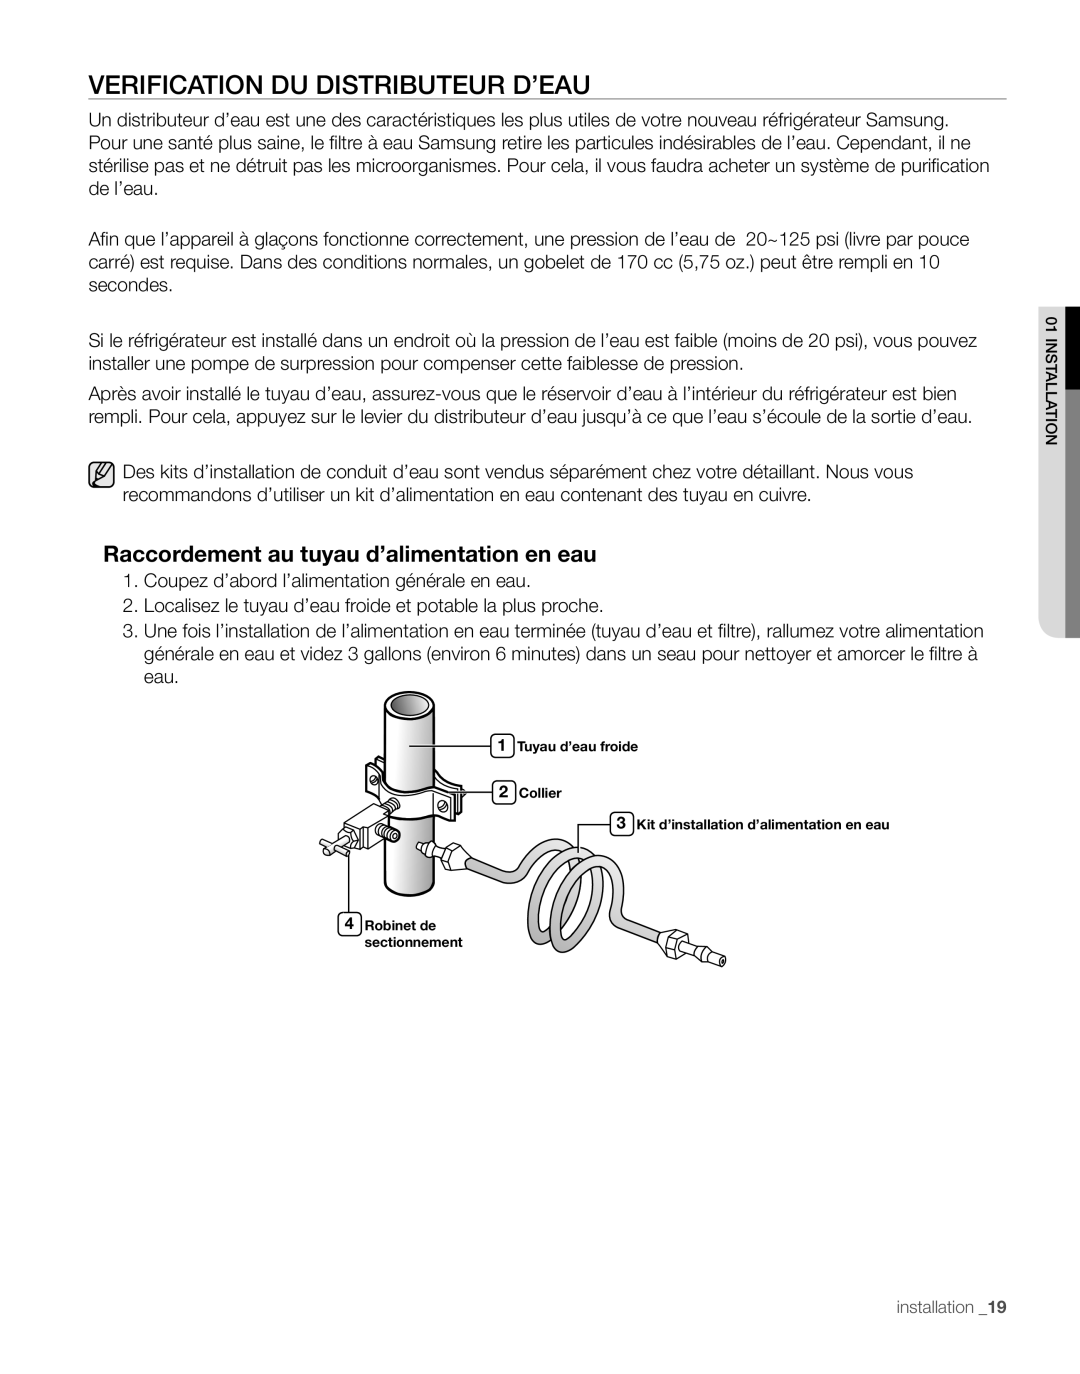 Samsung RS267TD, RS265TD user manual Verification Du Distributeur D’Eau, Raccordement au tuyau d’alimentation en eau 